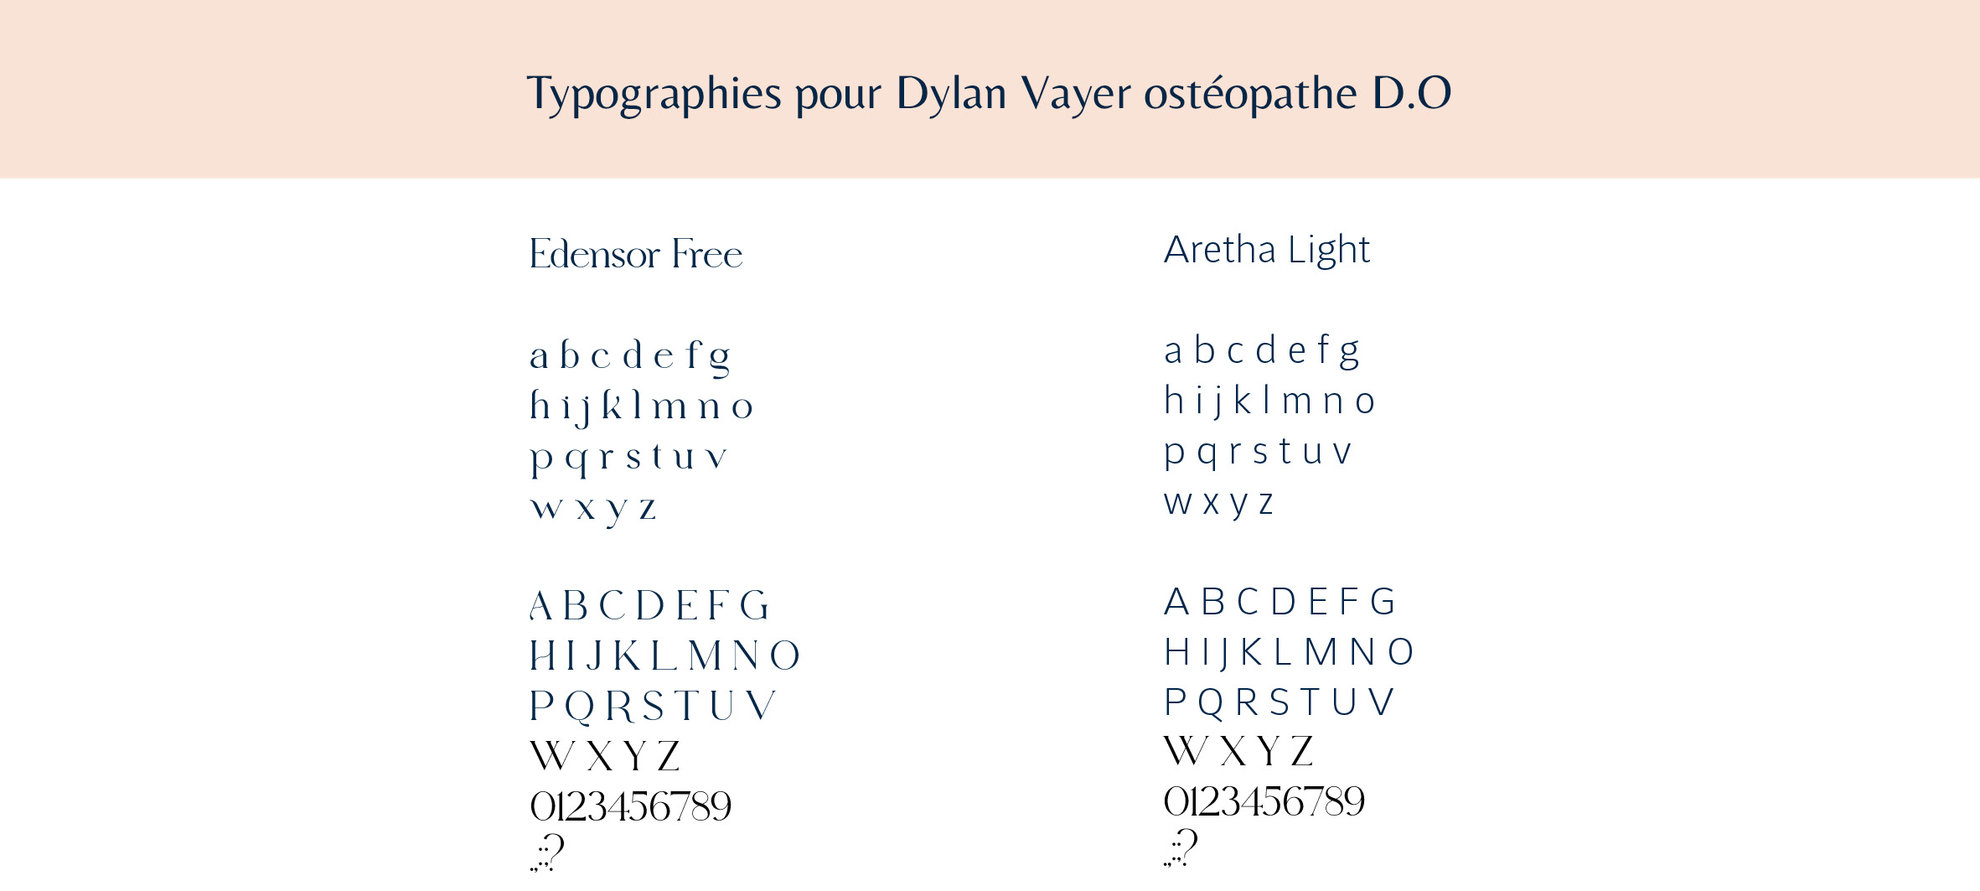 Identité visuelle, typographies pour Dylan Vayer ostéopathe D.O